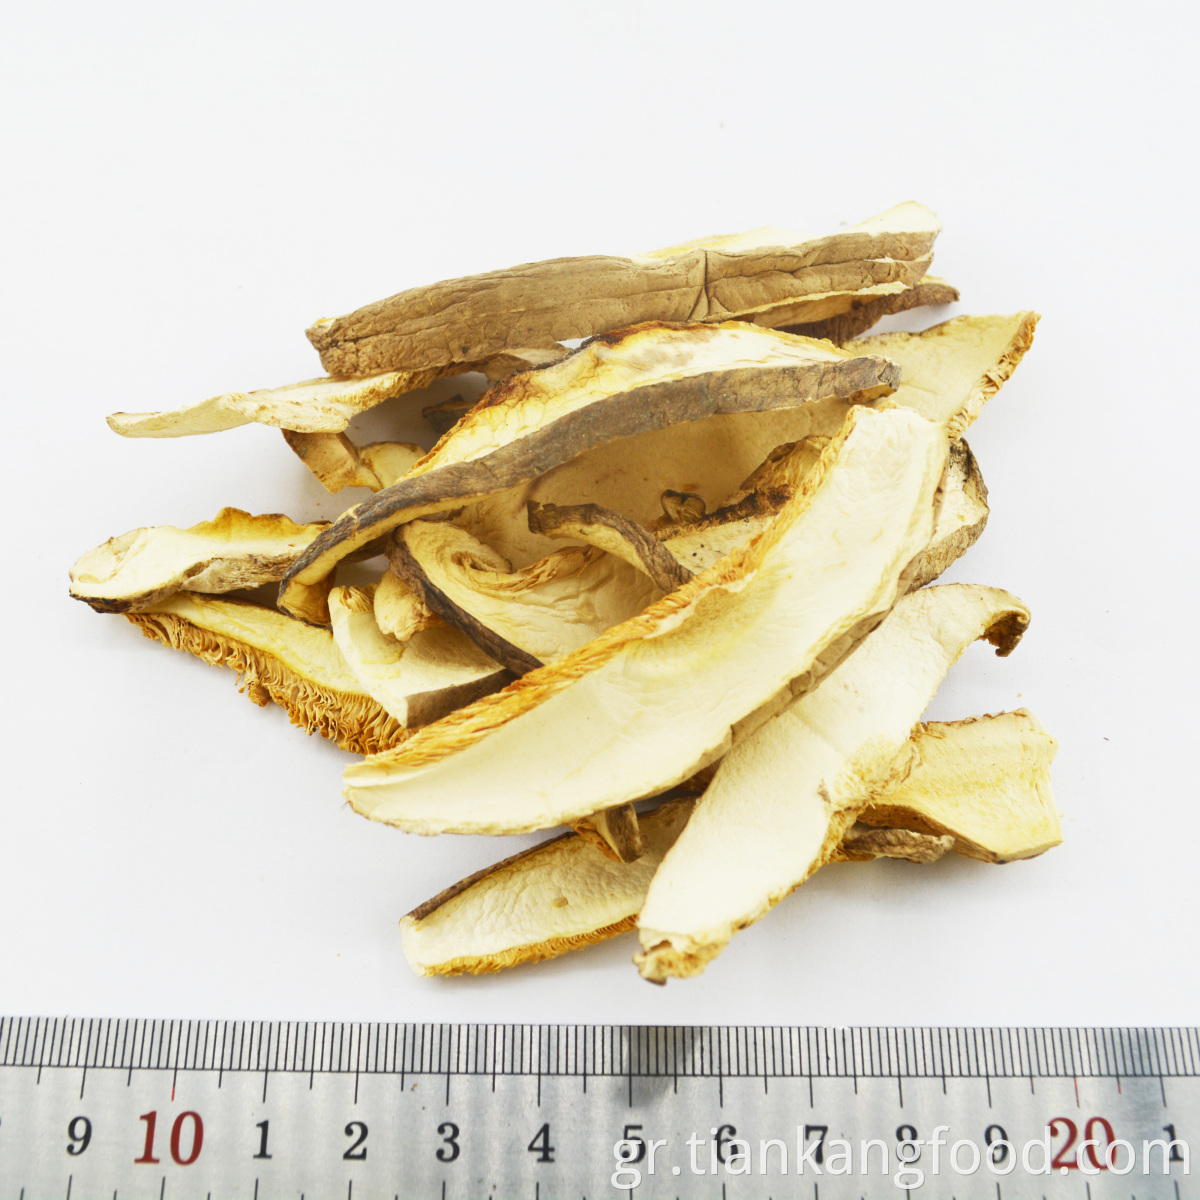 dried mushroom slices